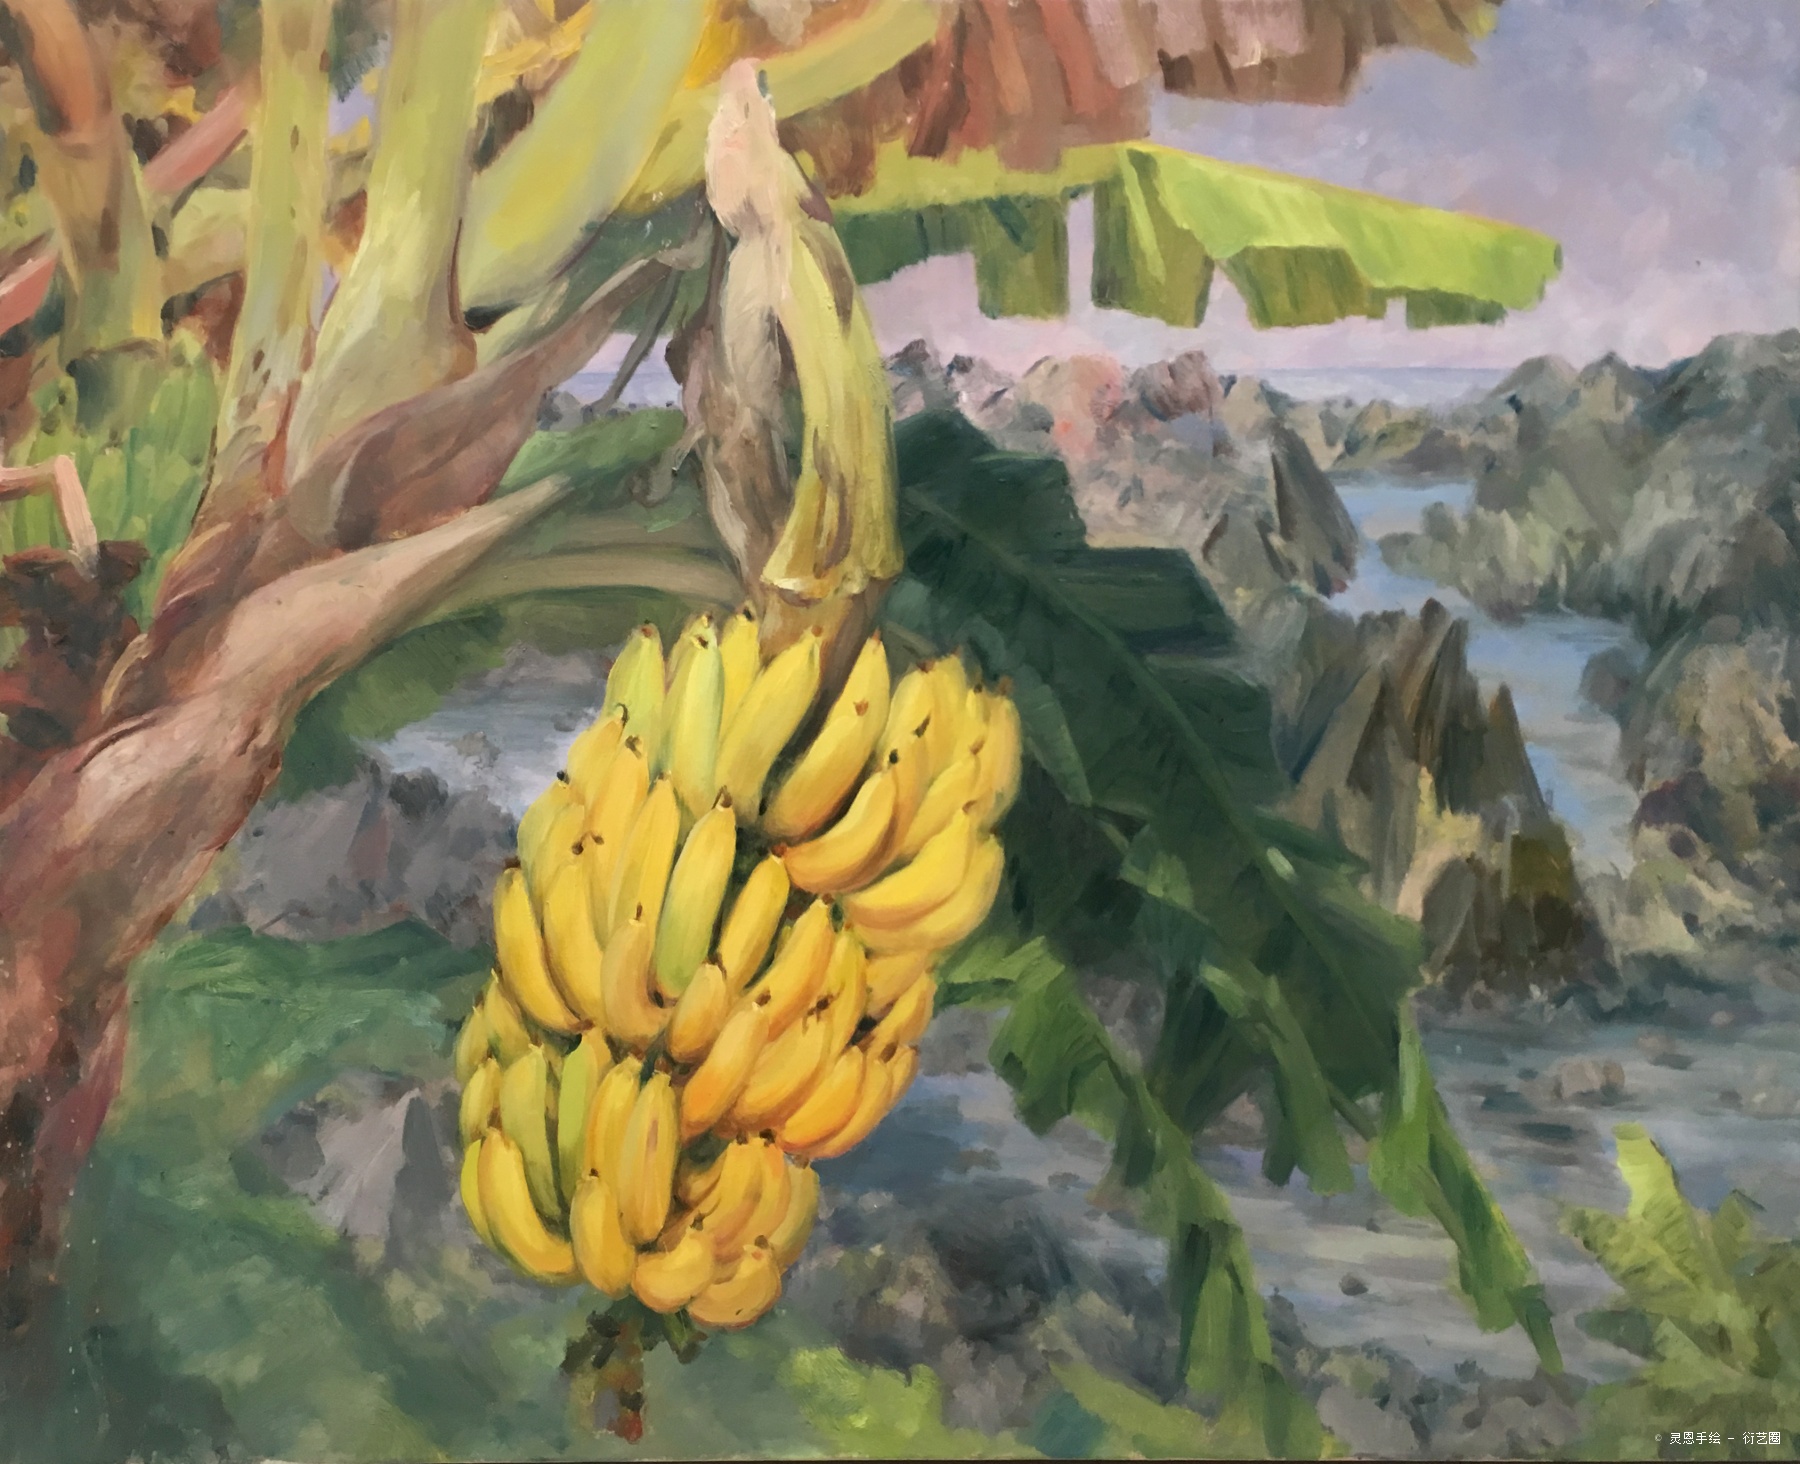 香蕉林之四,李喻, 2020年布面油画 